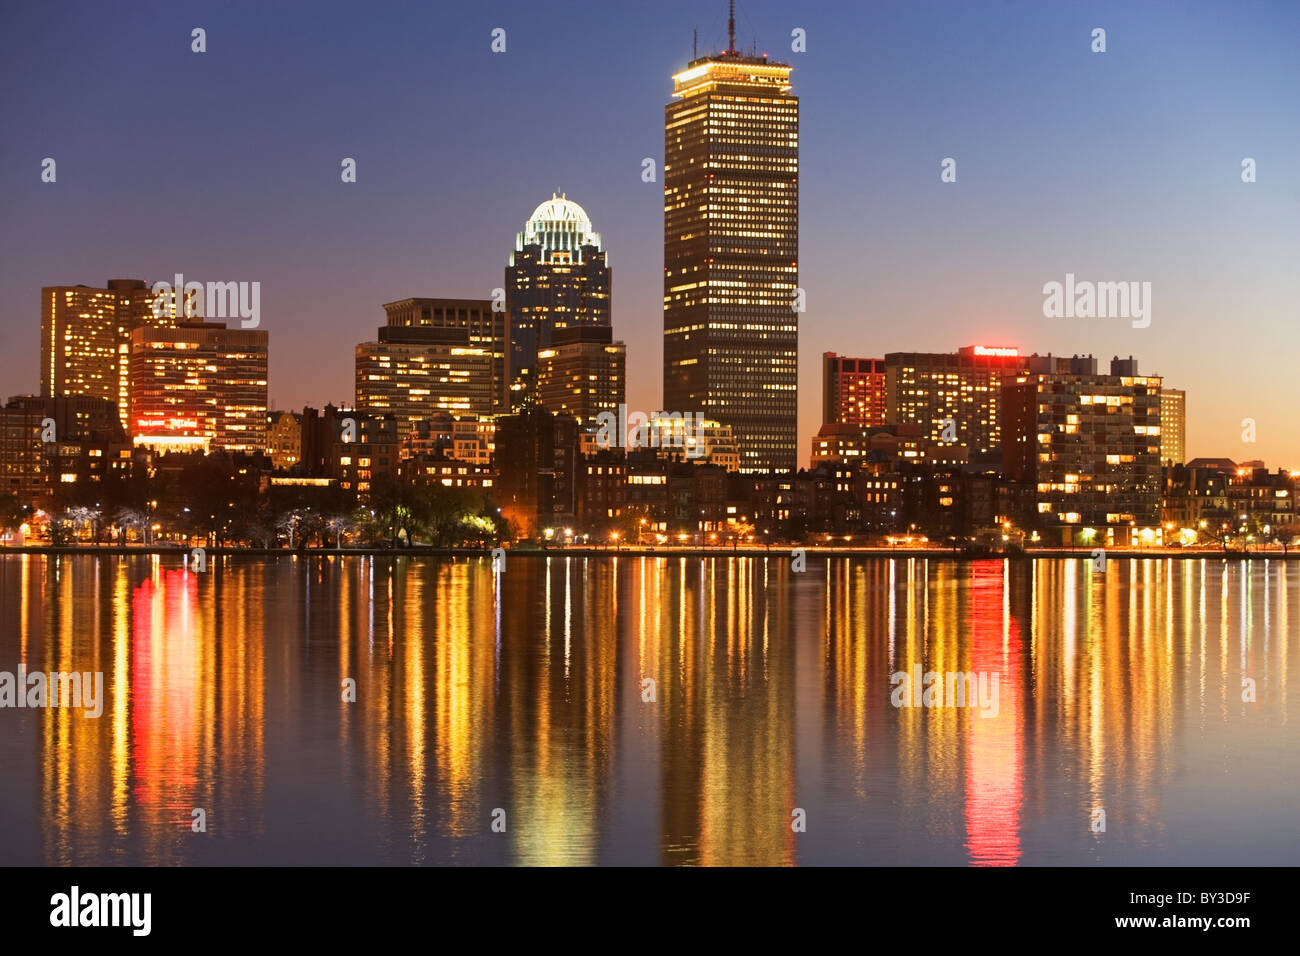 USA, Massachusetts, Boston skyline at dusk Stock Photo